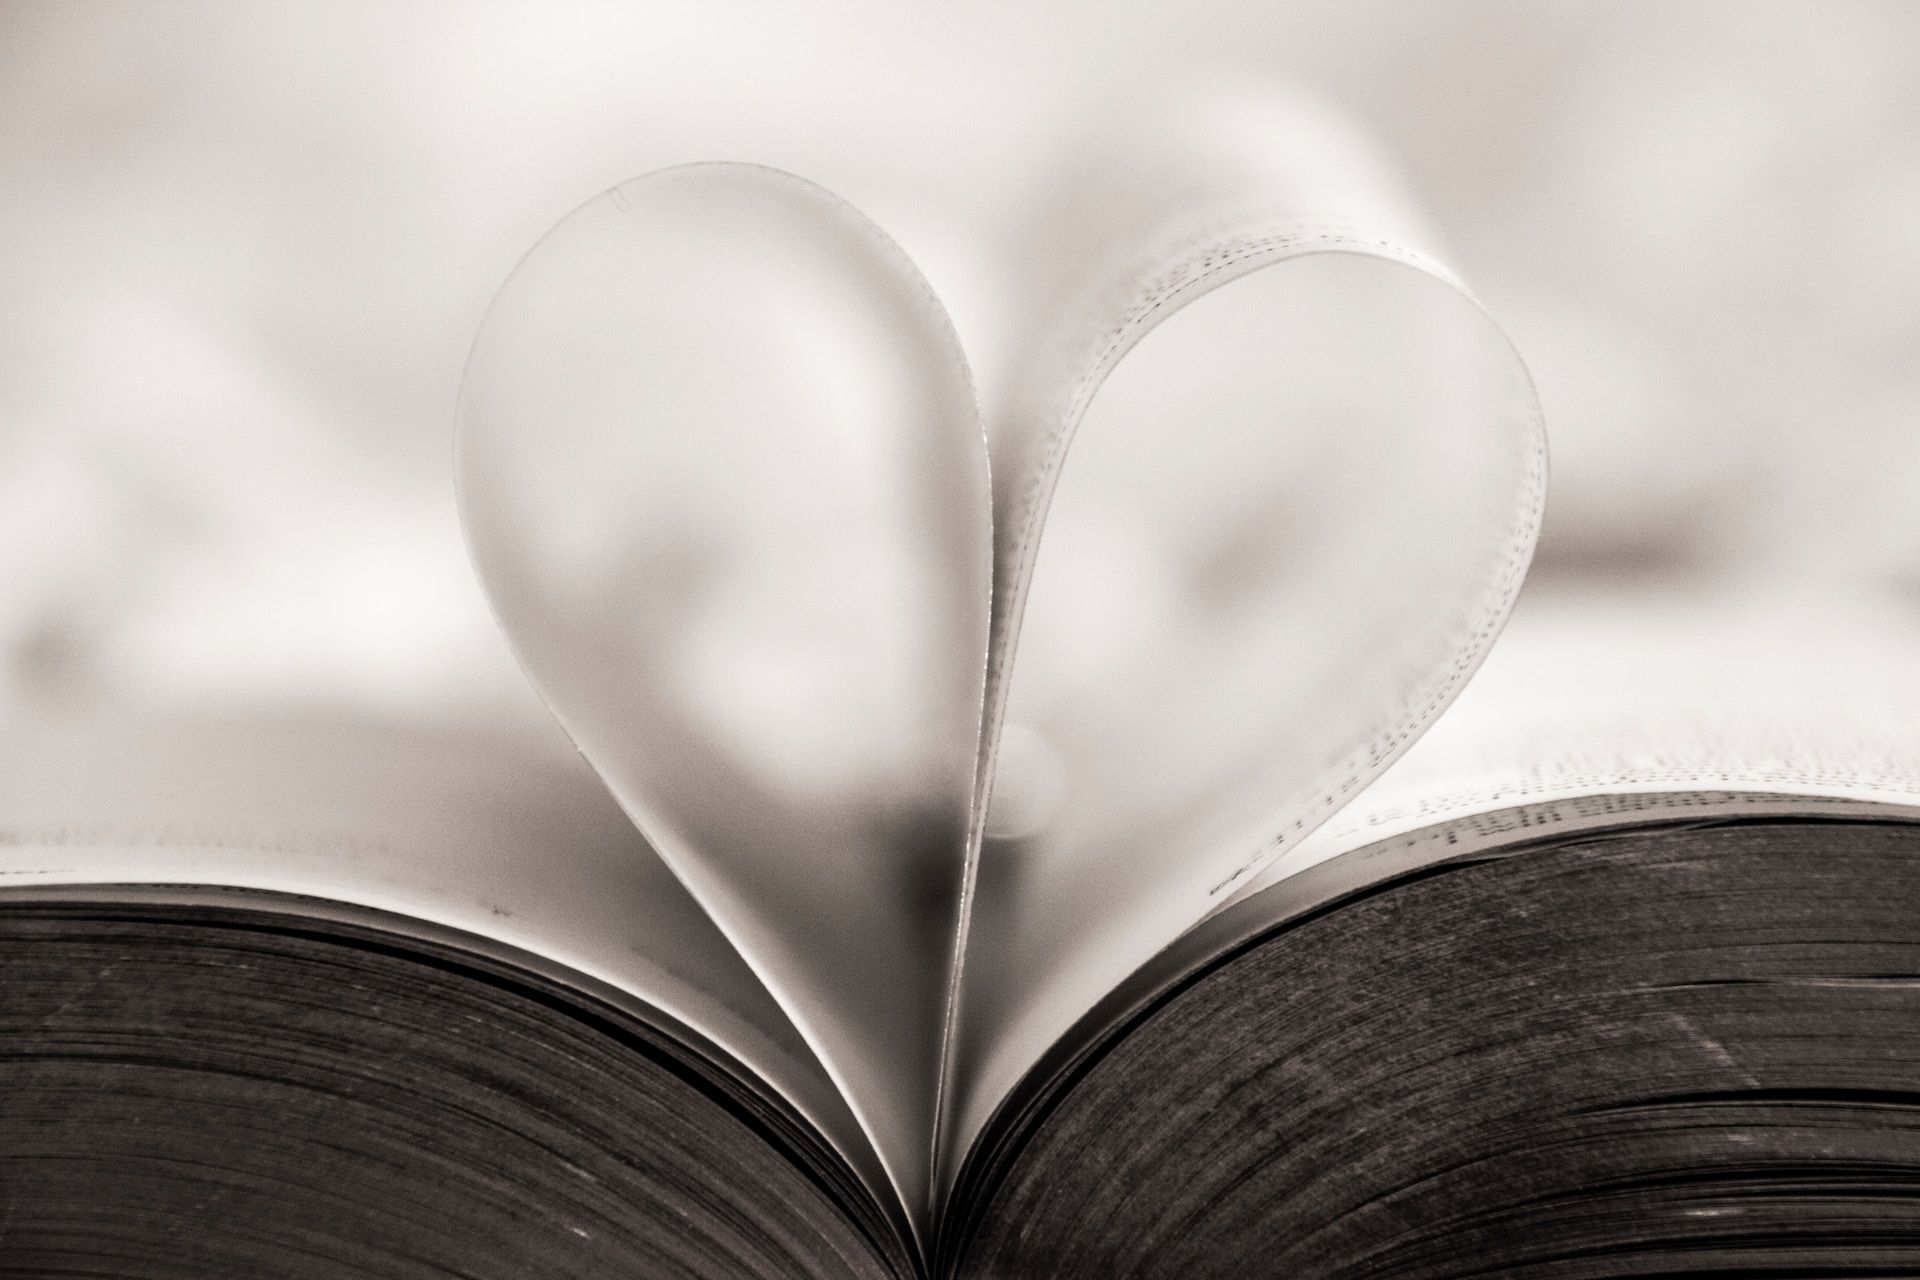 Un livre ouvert avec deux pages formant un cœur - Photo by Hush Naidoo on https://unsplash.com/fr/photos/coeur-en-forme-de-livre-page-gros-plan-photographie-2cdzDZ90M90